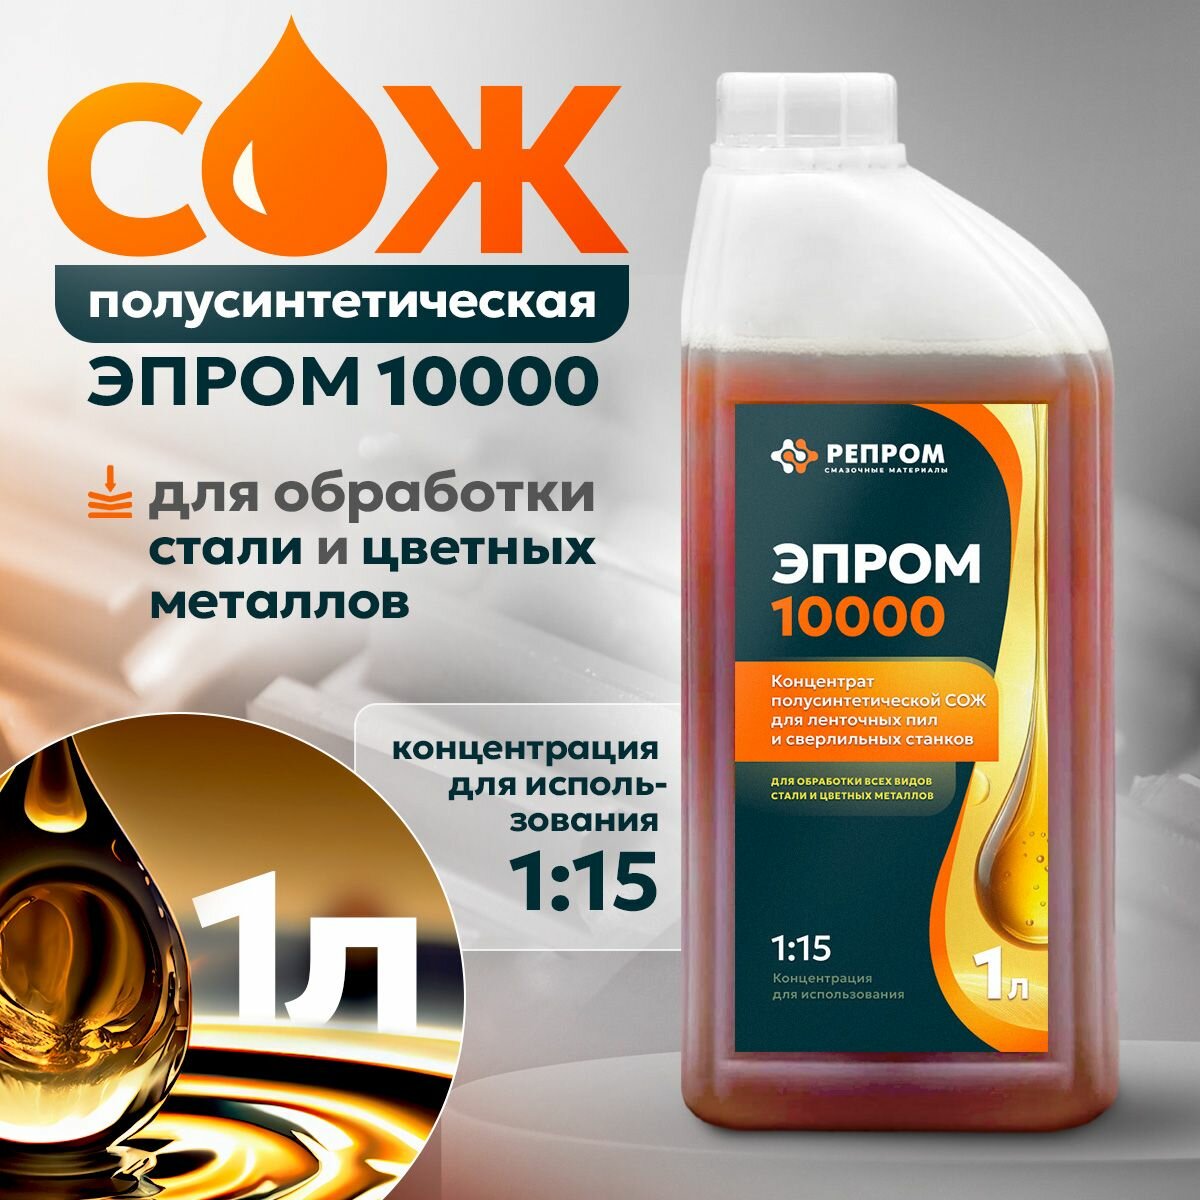 Смазочно-охлаждающая жидкость СОЖ Эпром 10000 для станков / для металлообработки (концентрат 1:15) 1л Репром